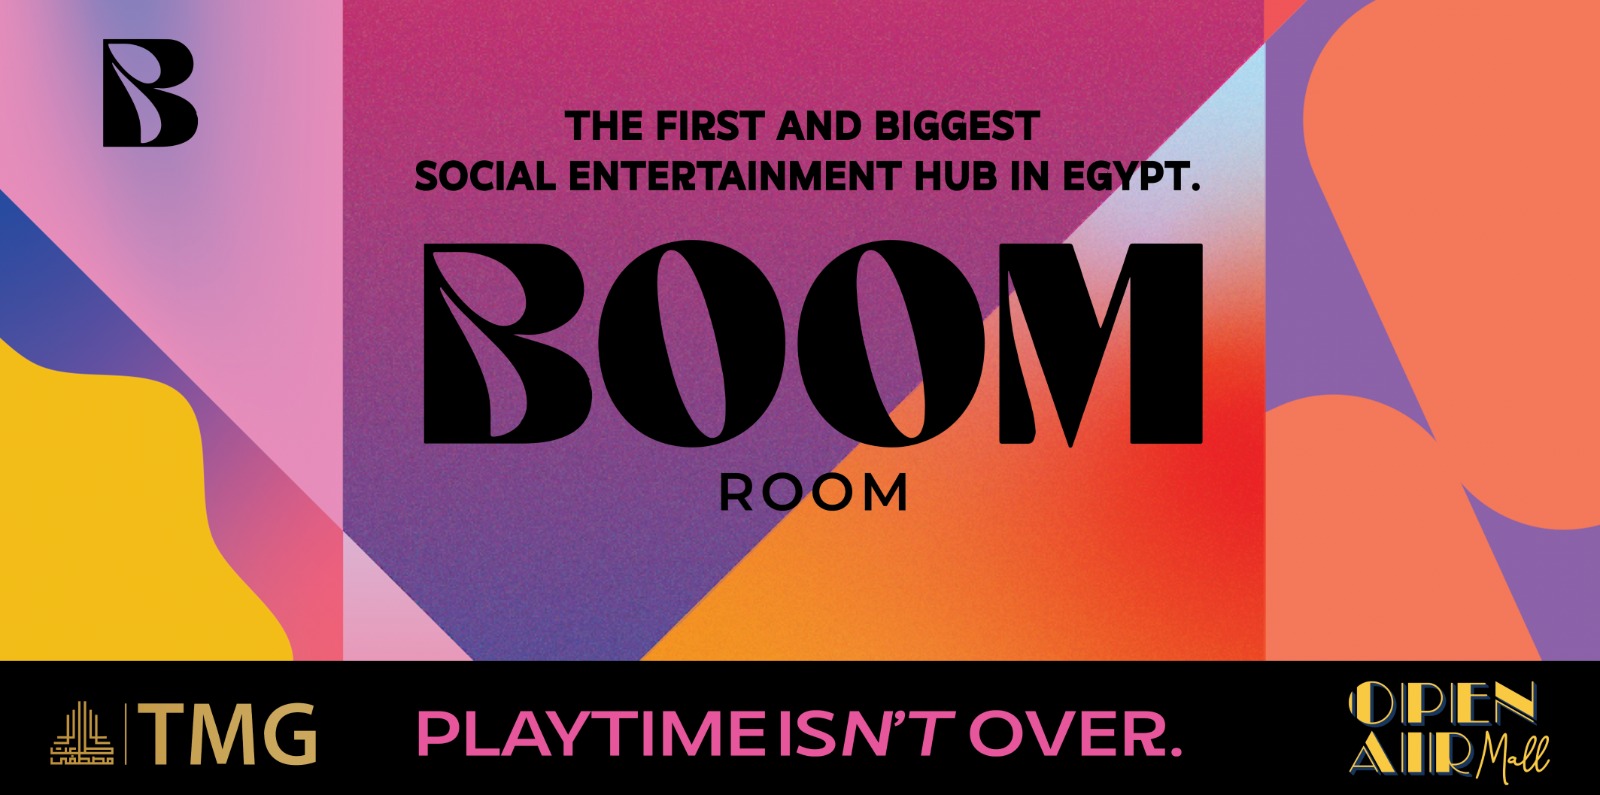 إنطلاق أول مركز ترفيهى اجتماعى من نوعه بمصر Boom Room فى اوبن آير مول مدينتى (1)